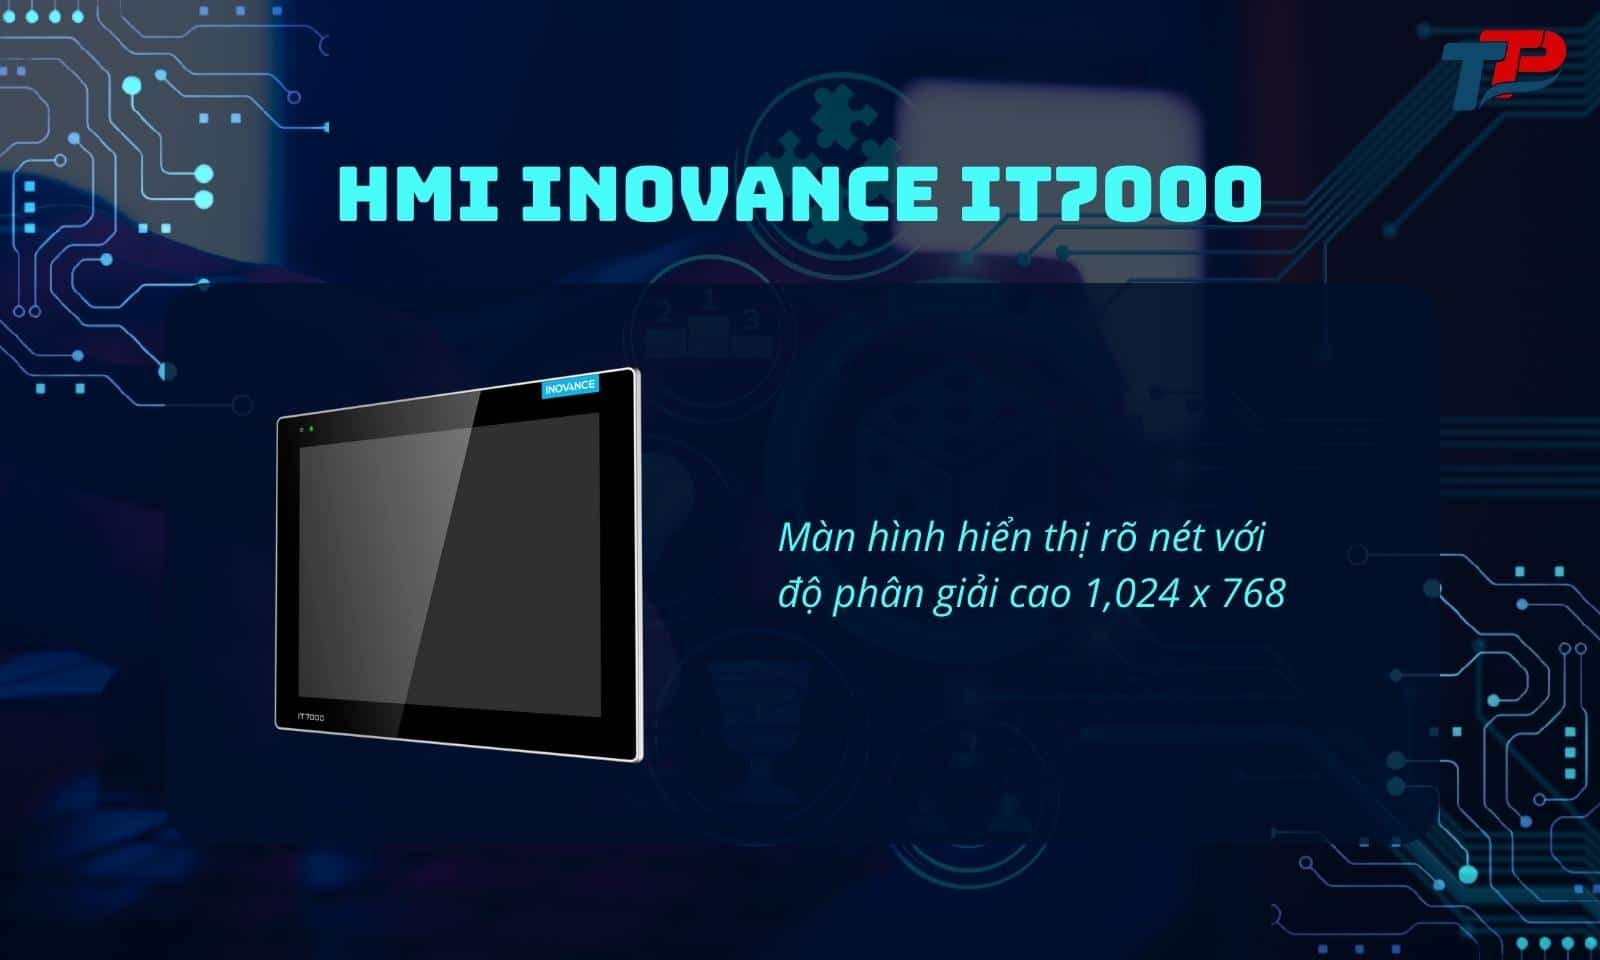 HMI Inovance IT7000 màn hình hiển thị rõ nét